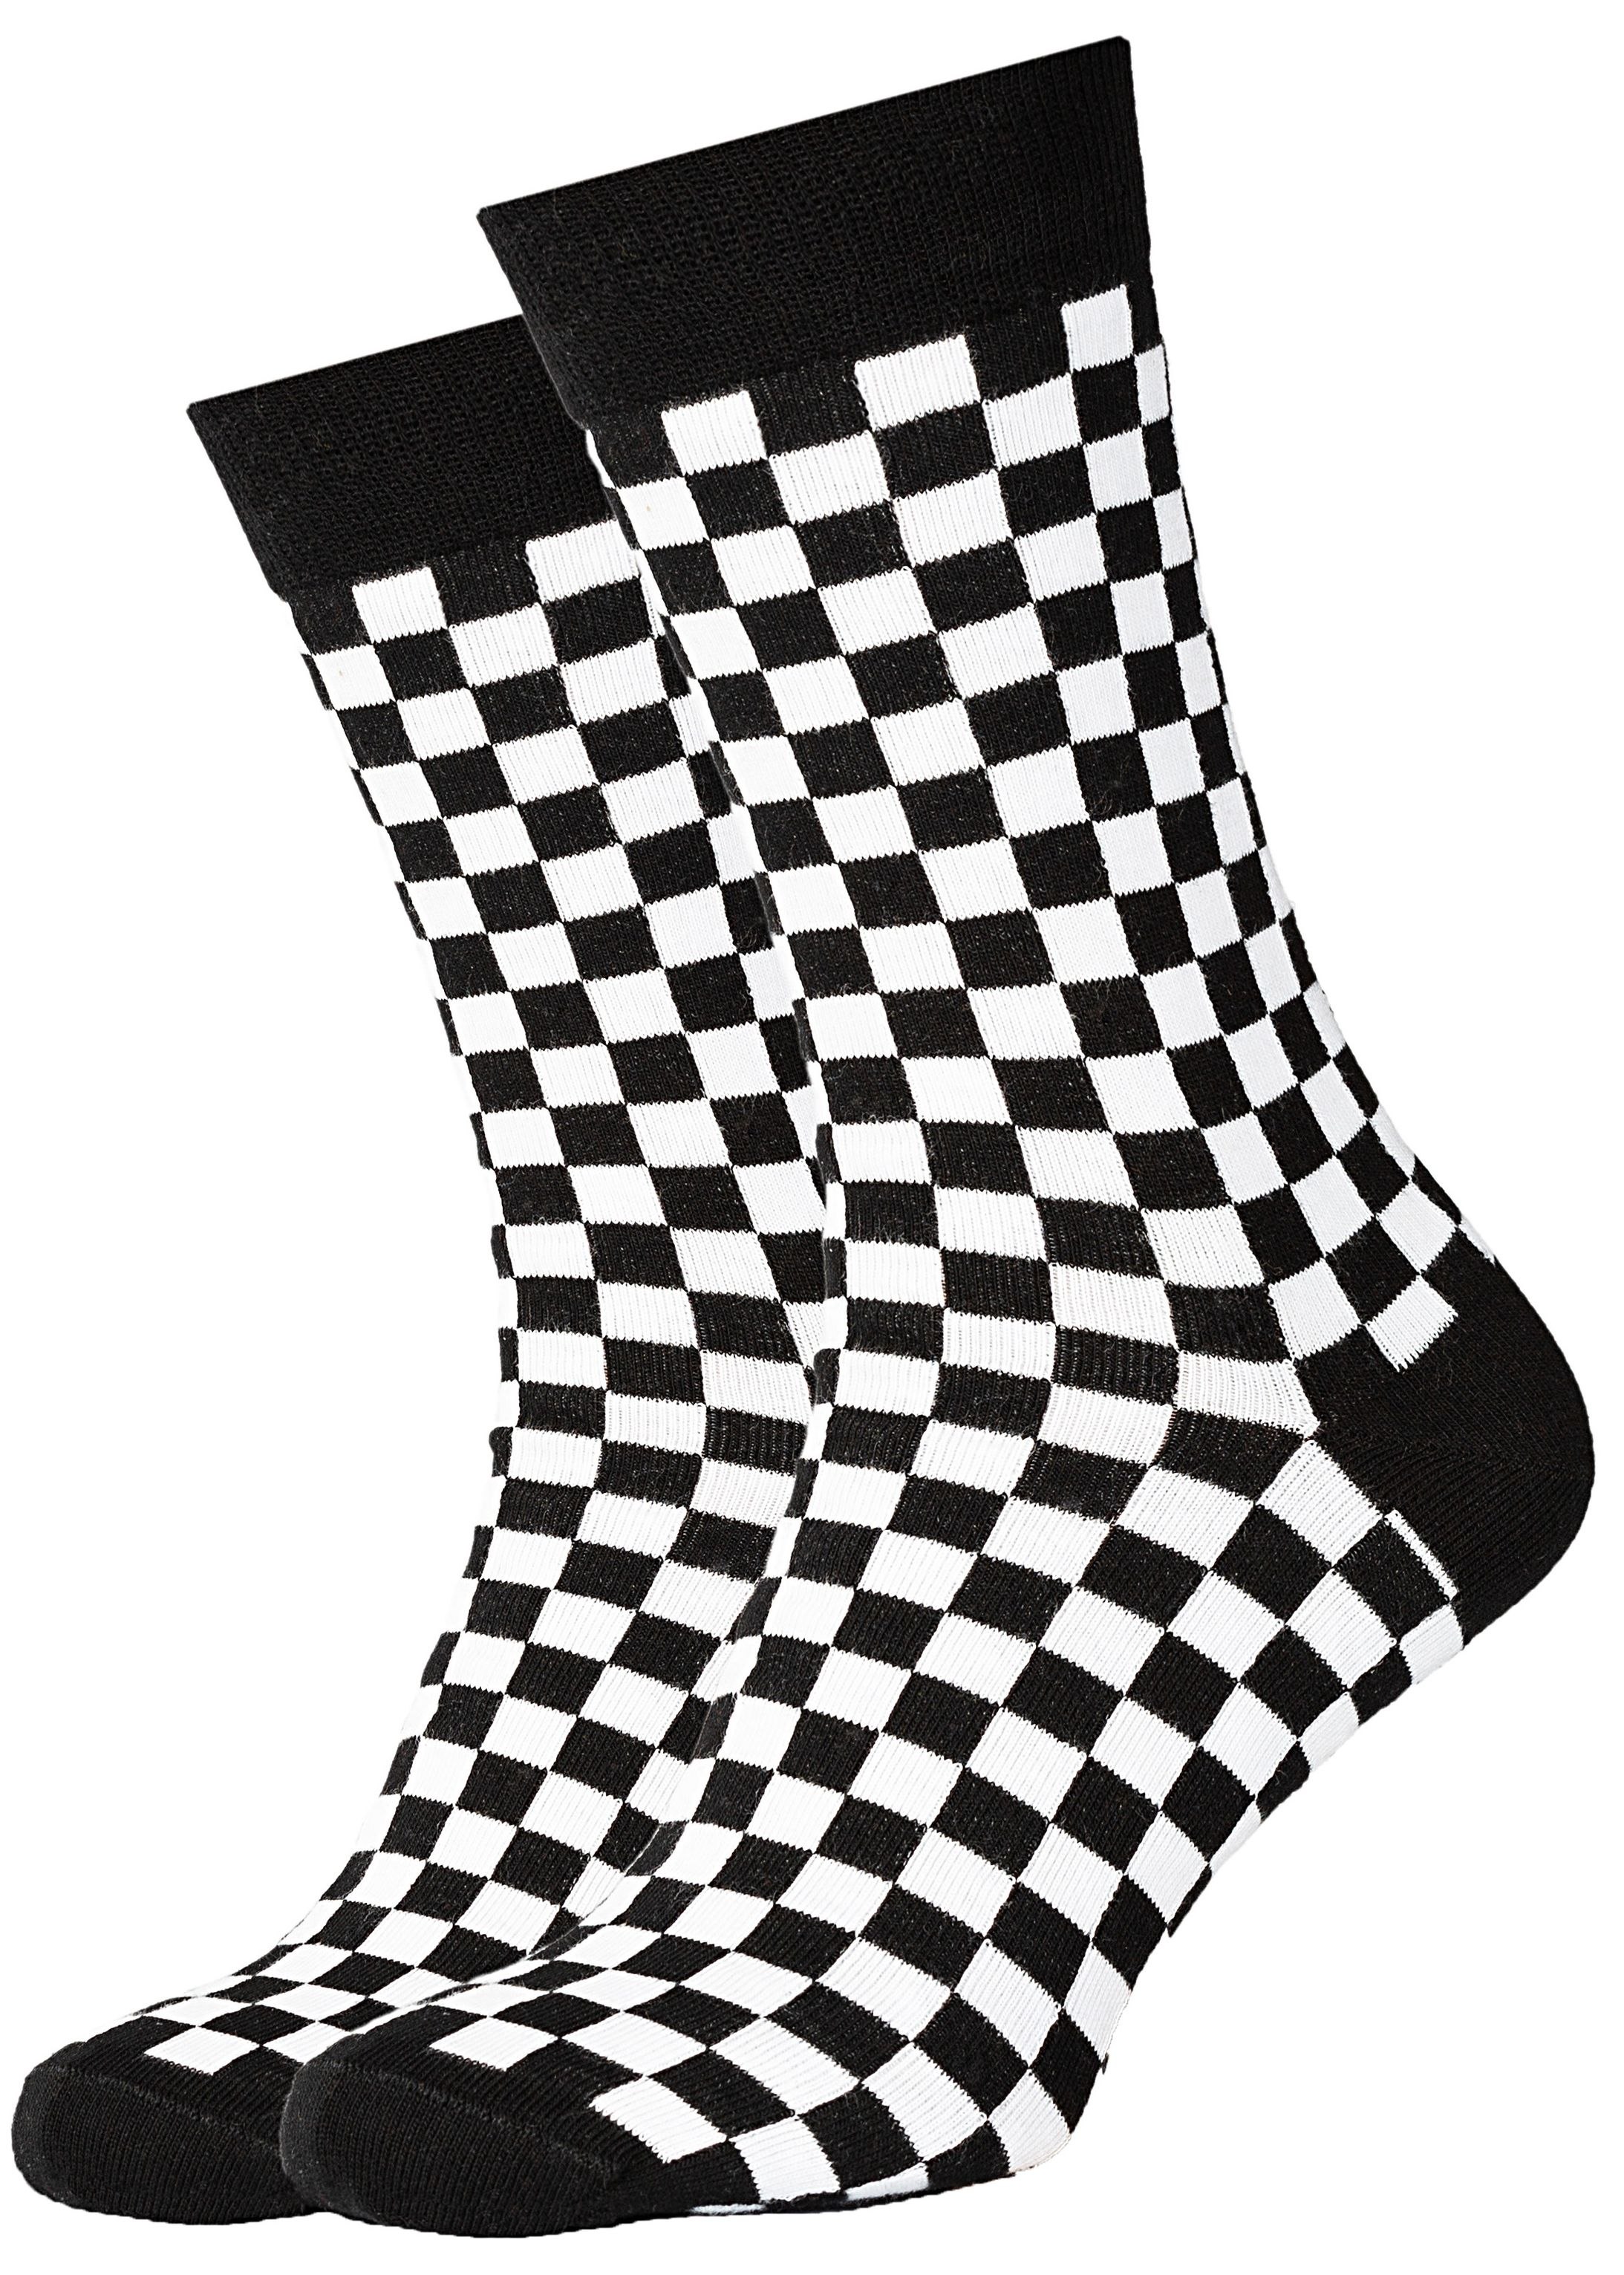 Черно белые носочки. Черно белые носки. Шахматные носки. Носки черно белые квадрат. Носки в чёрно белую клетку.